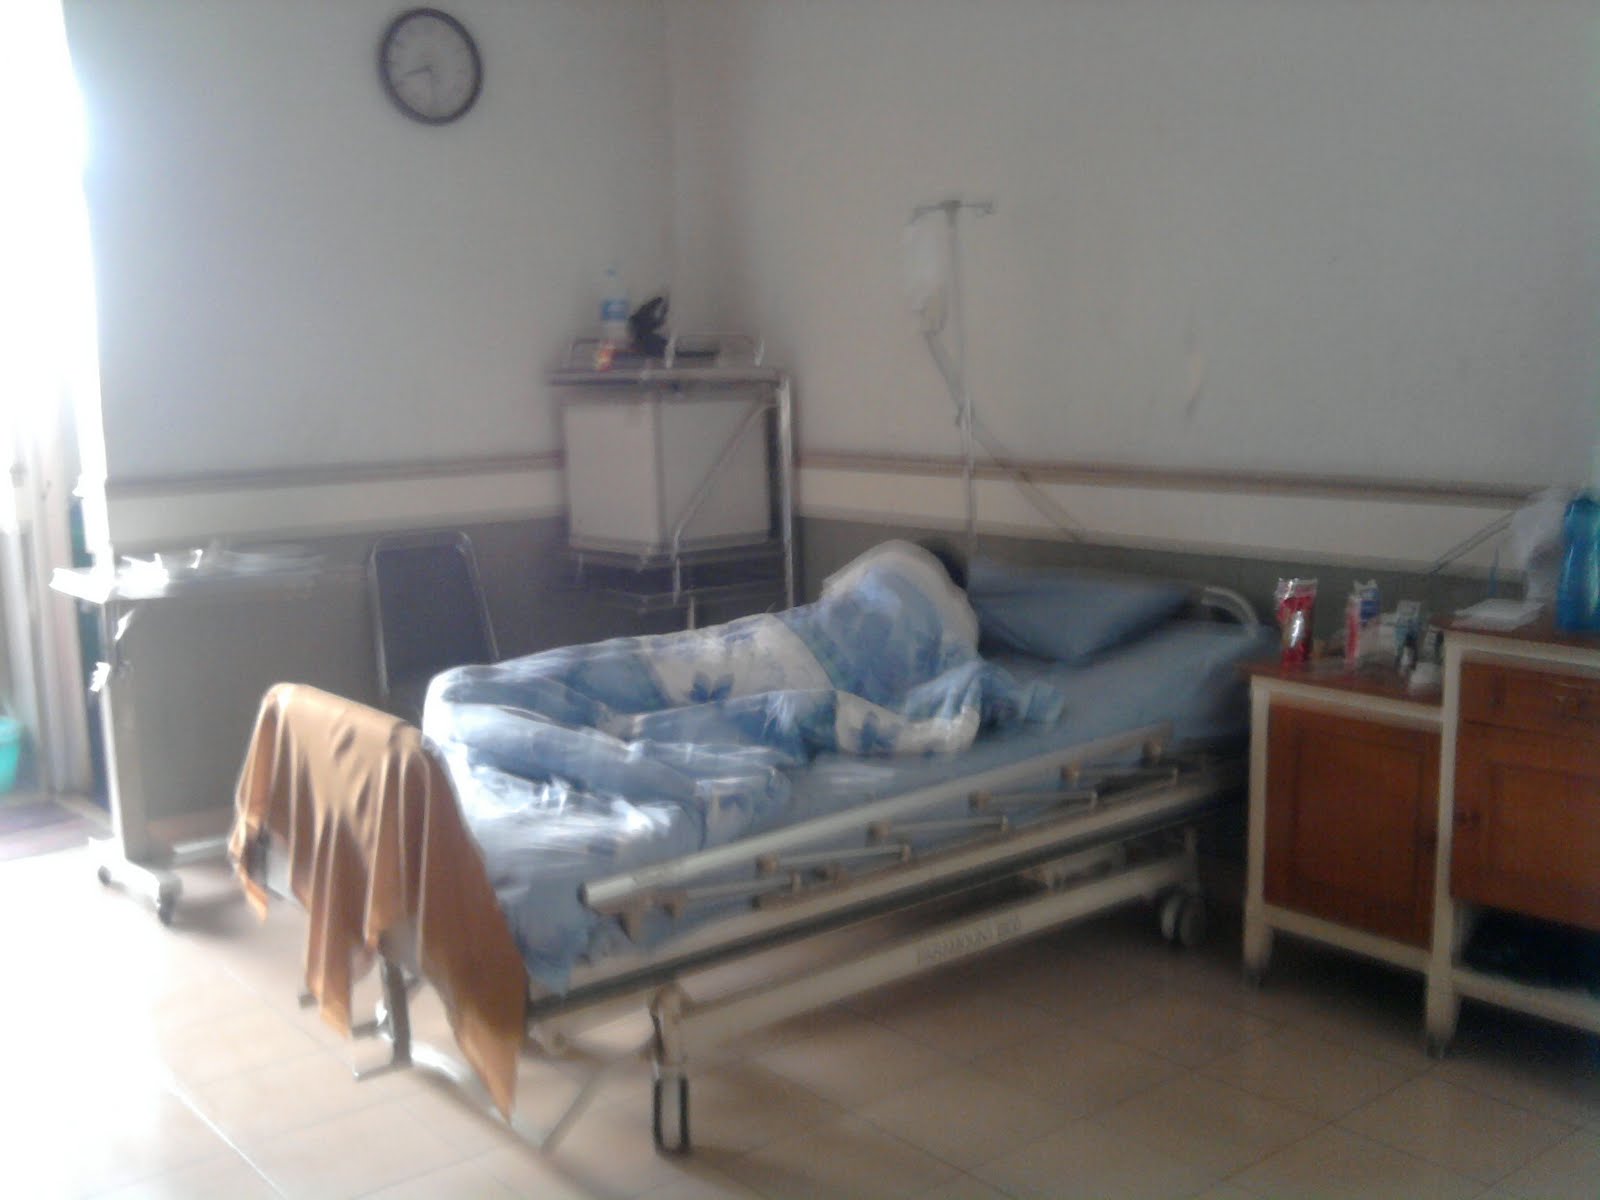  Foto  Orang  Sakit Dirawat Di  Rumah Sakit 